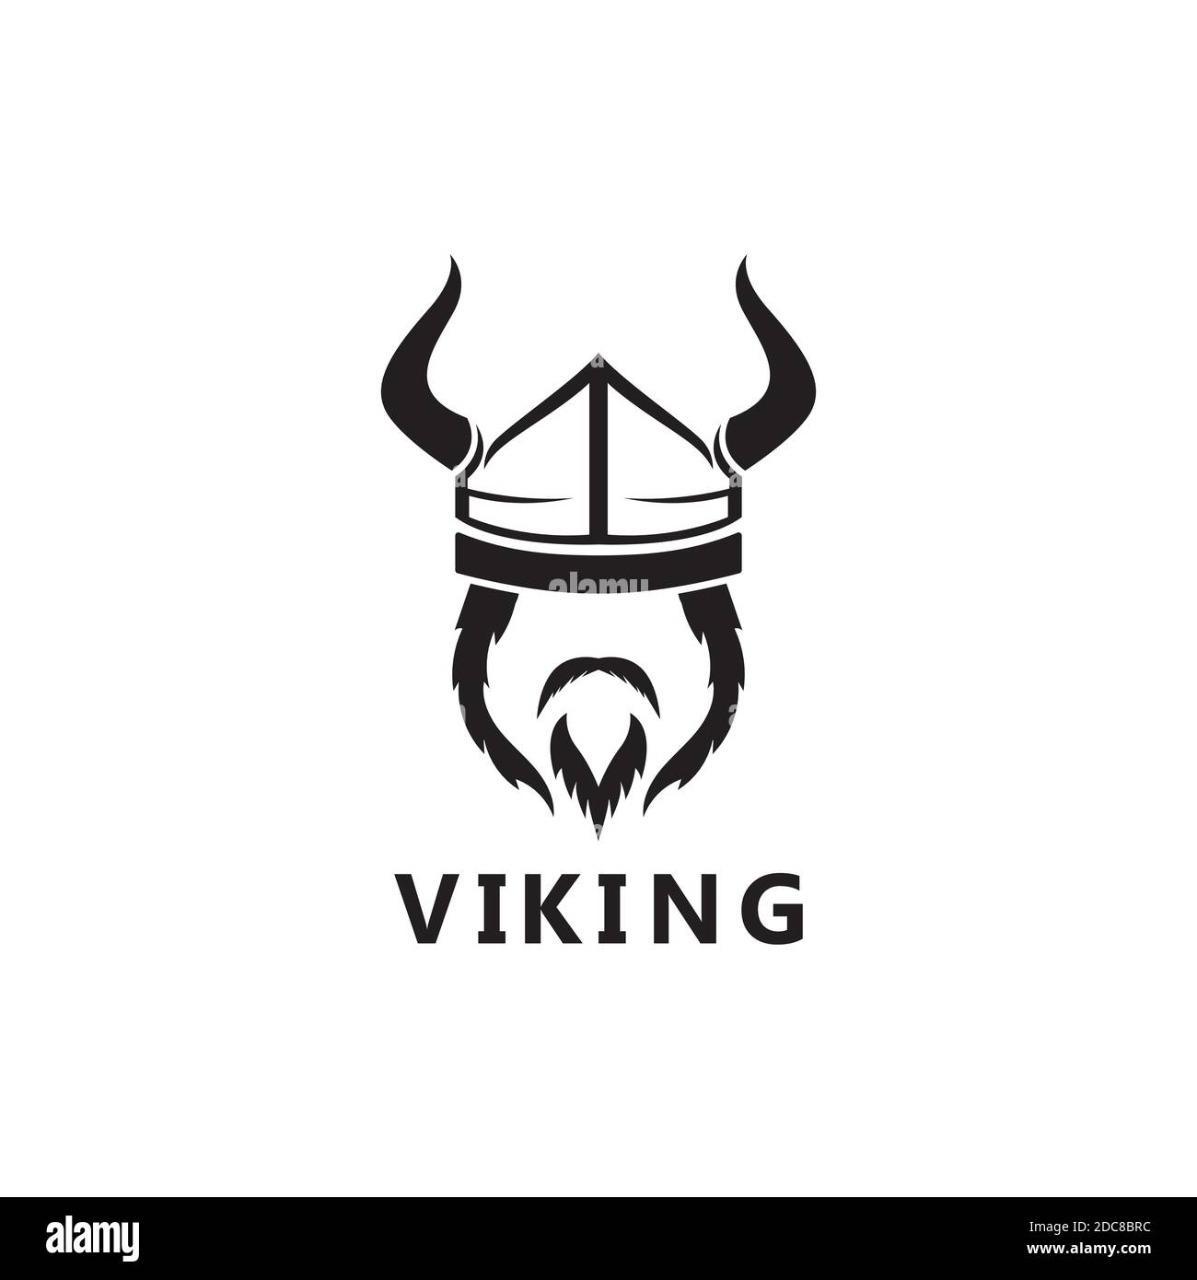 Vikingo95?s=x+rhuibgic2dfcqddqdewnf+afyvdr8xnntny+04c0q=